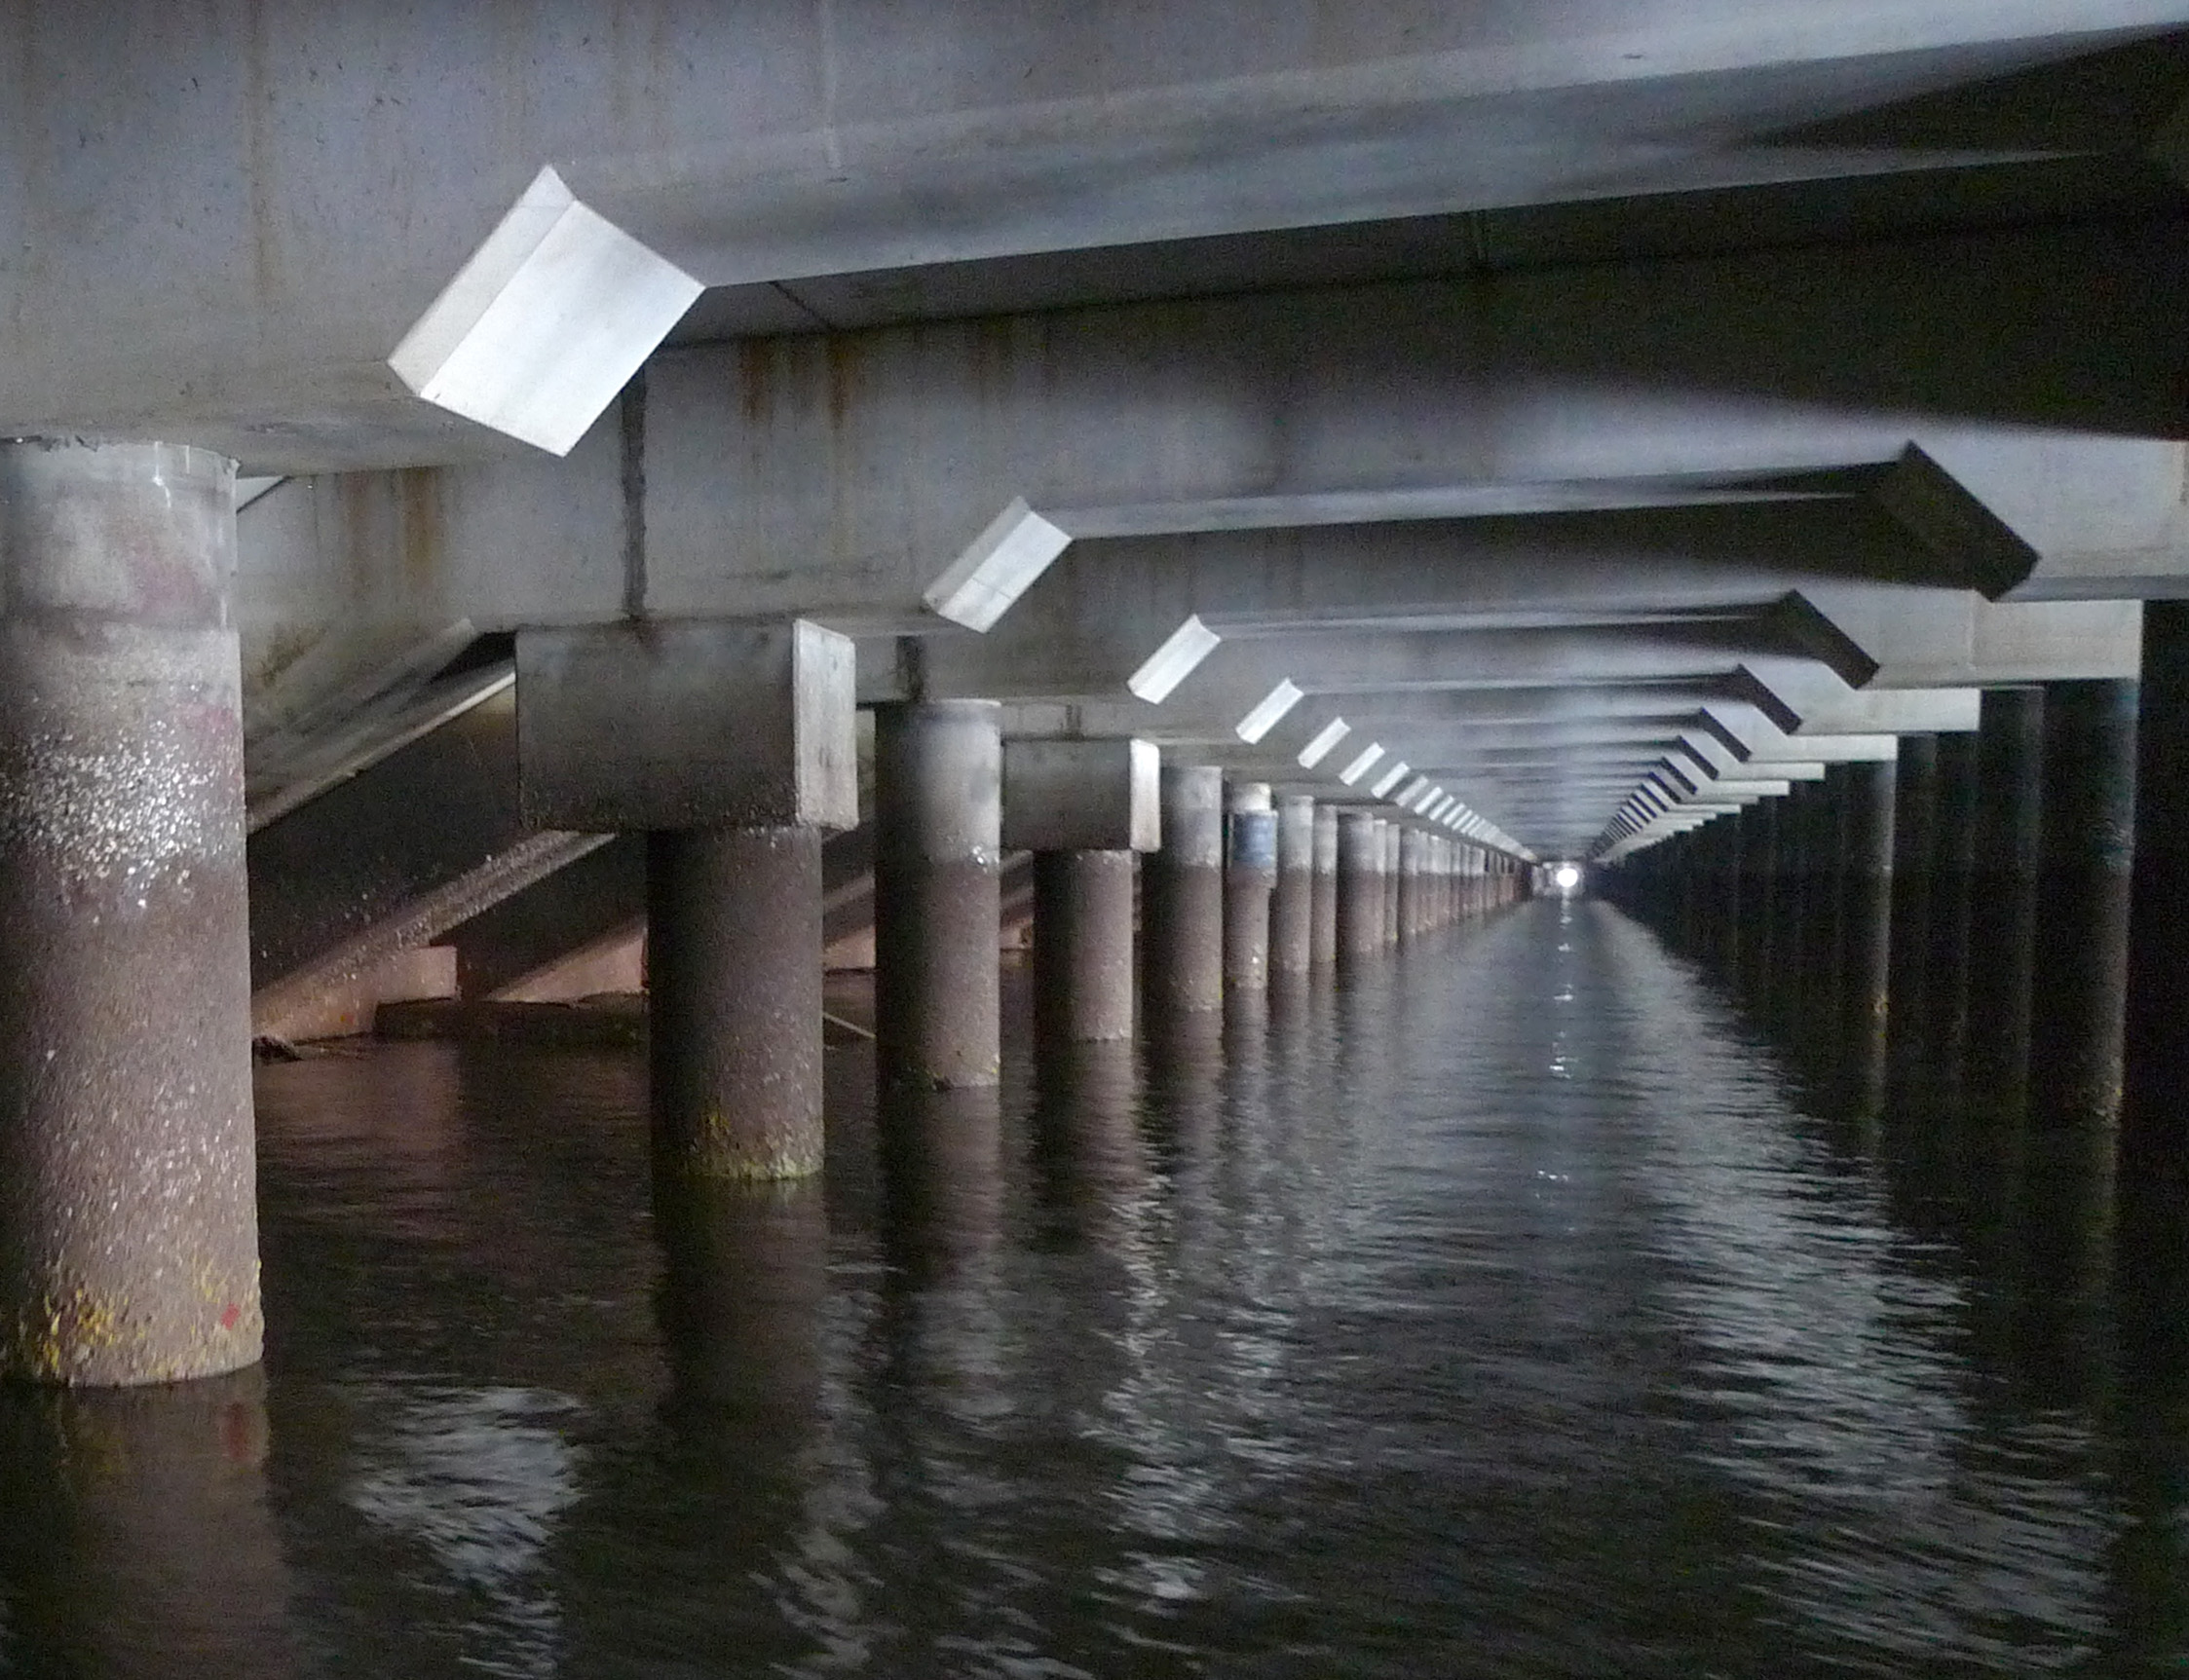 Under Terminal Structure